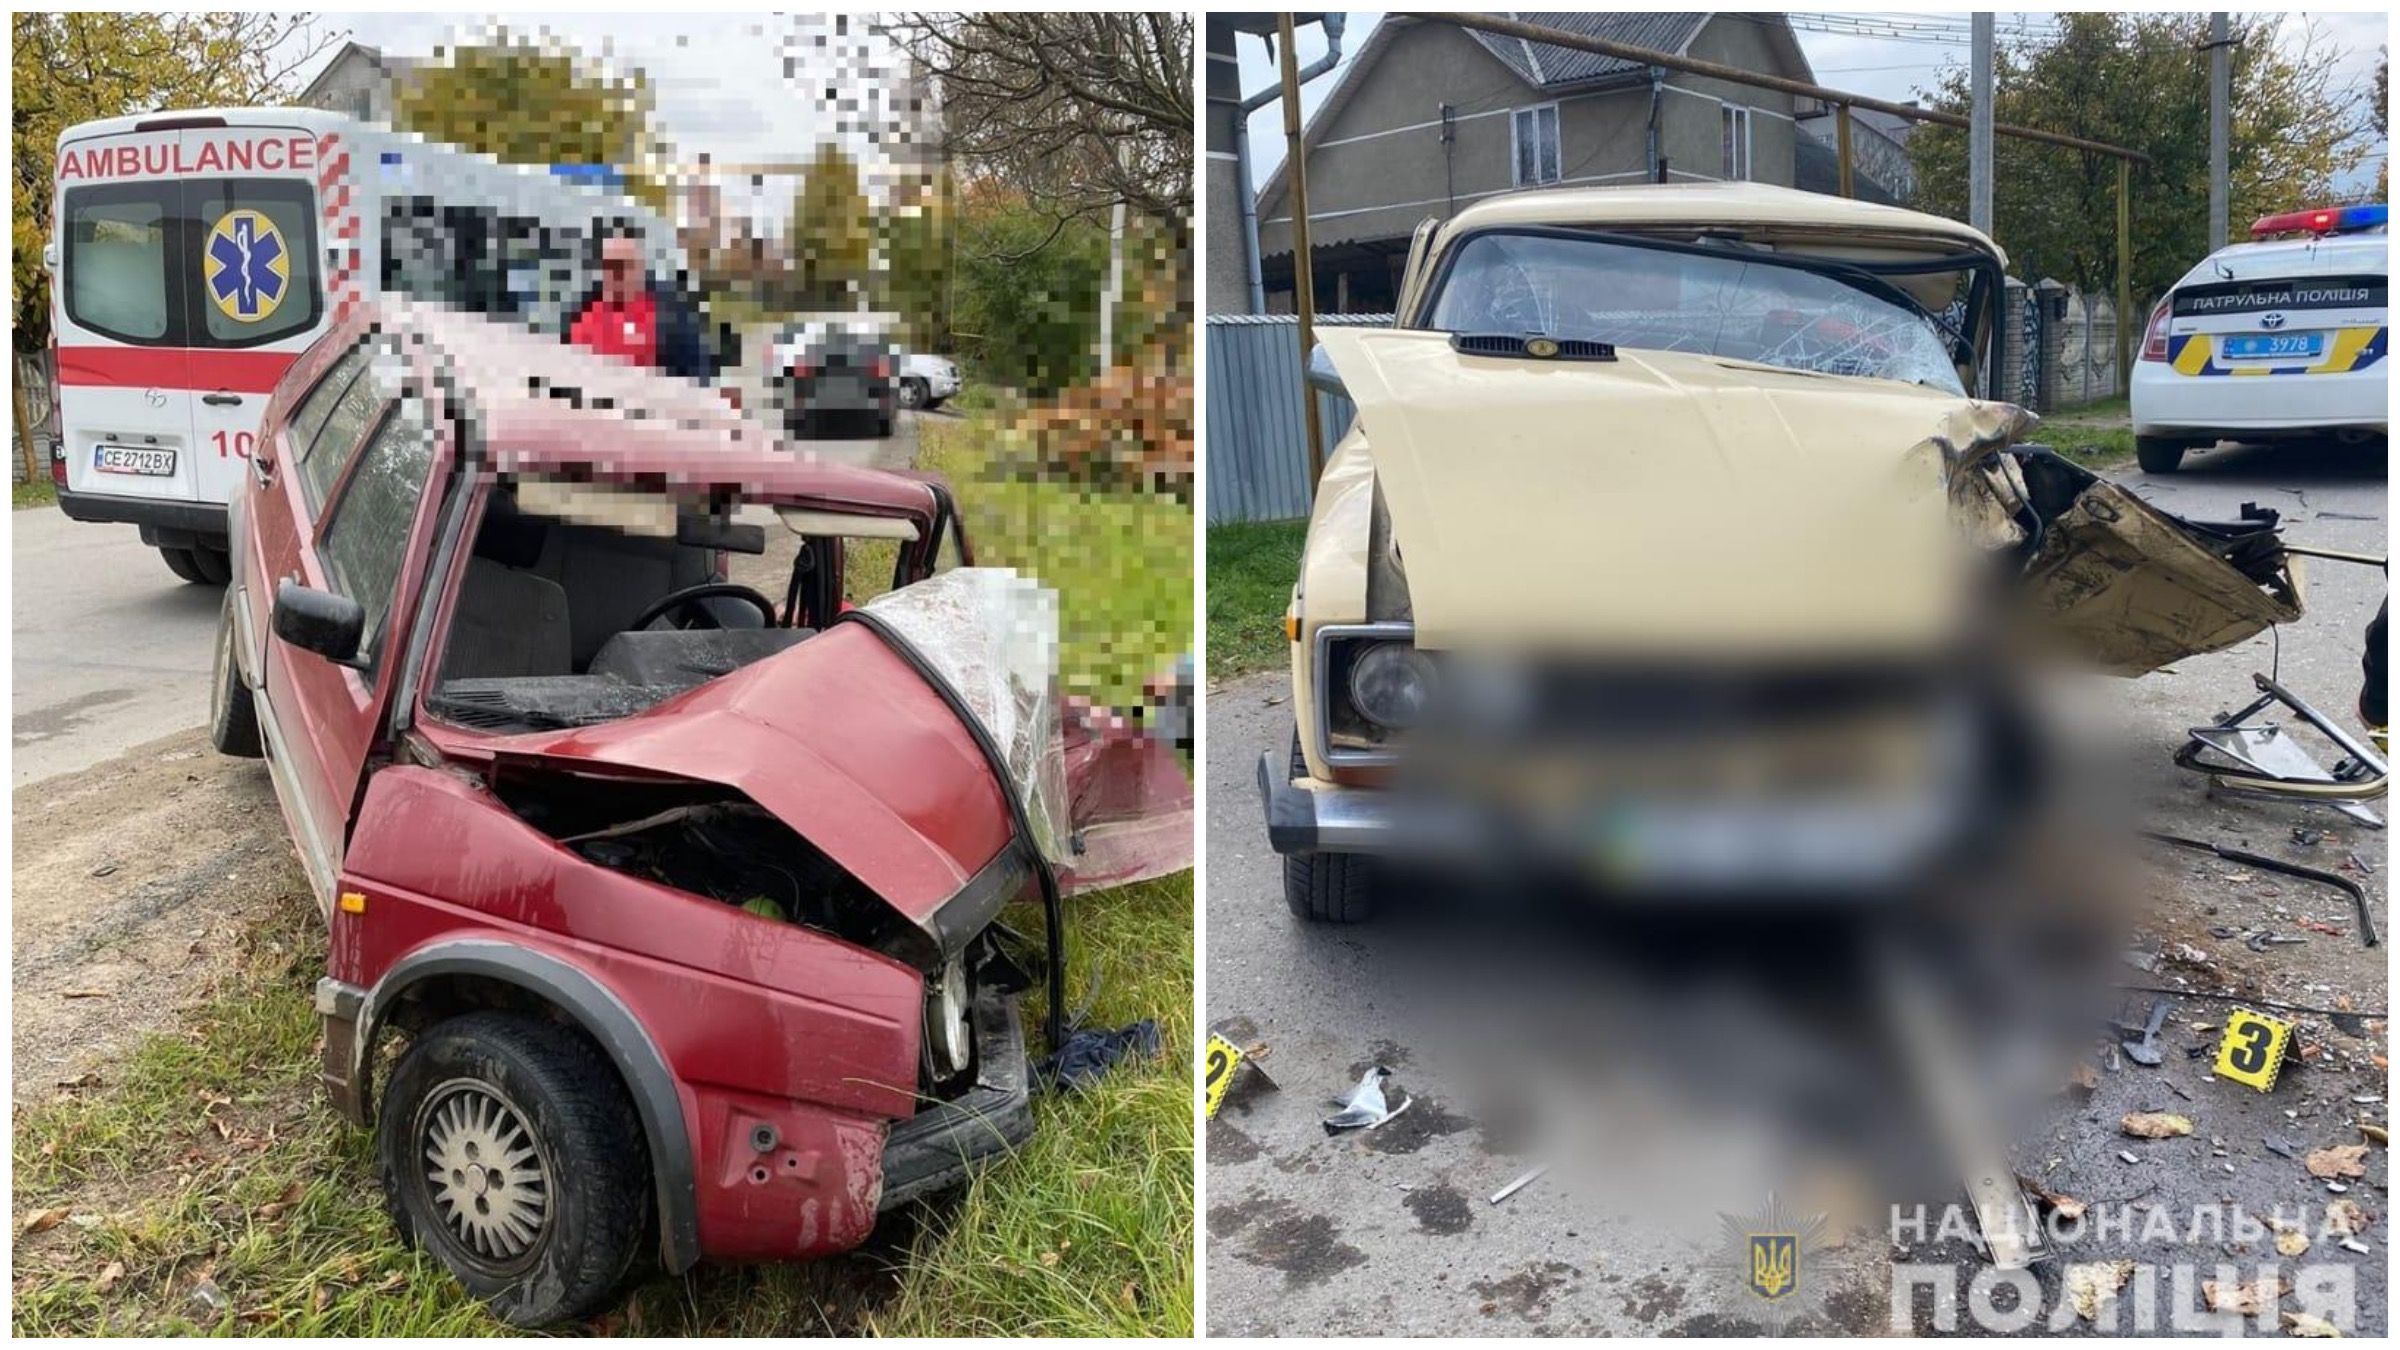 Авто превратились в лом: в Черновцах столкнулись легковушки, есть пострадавшие